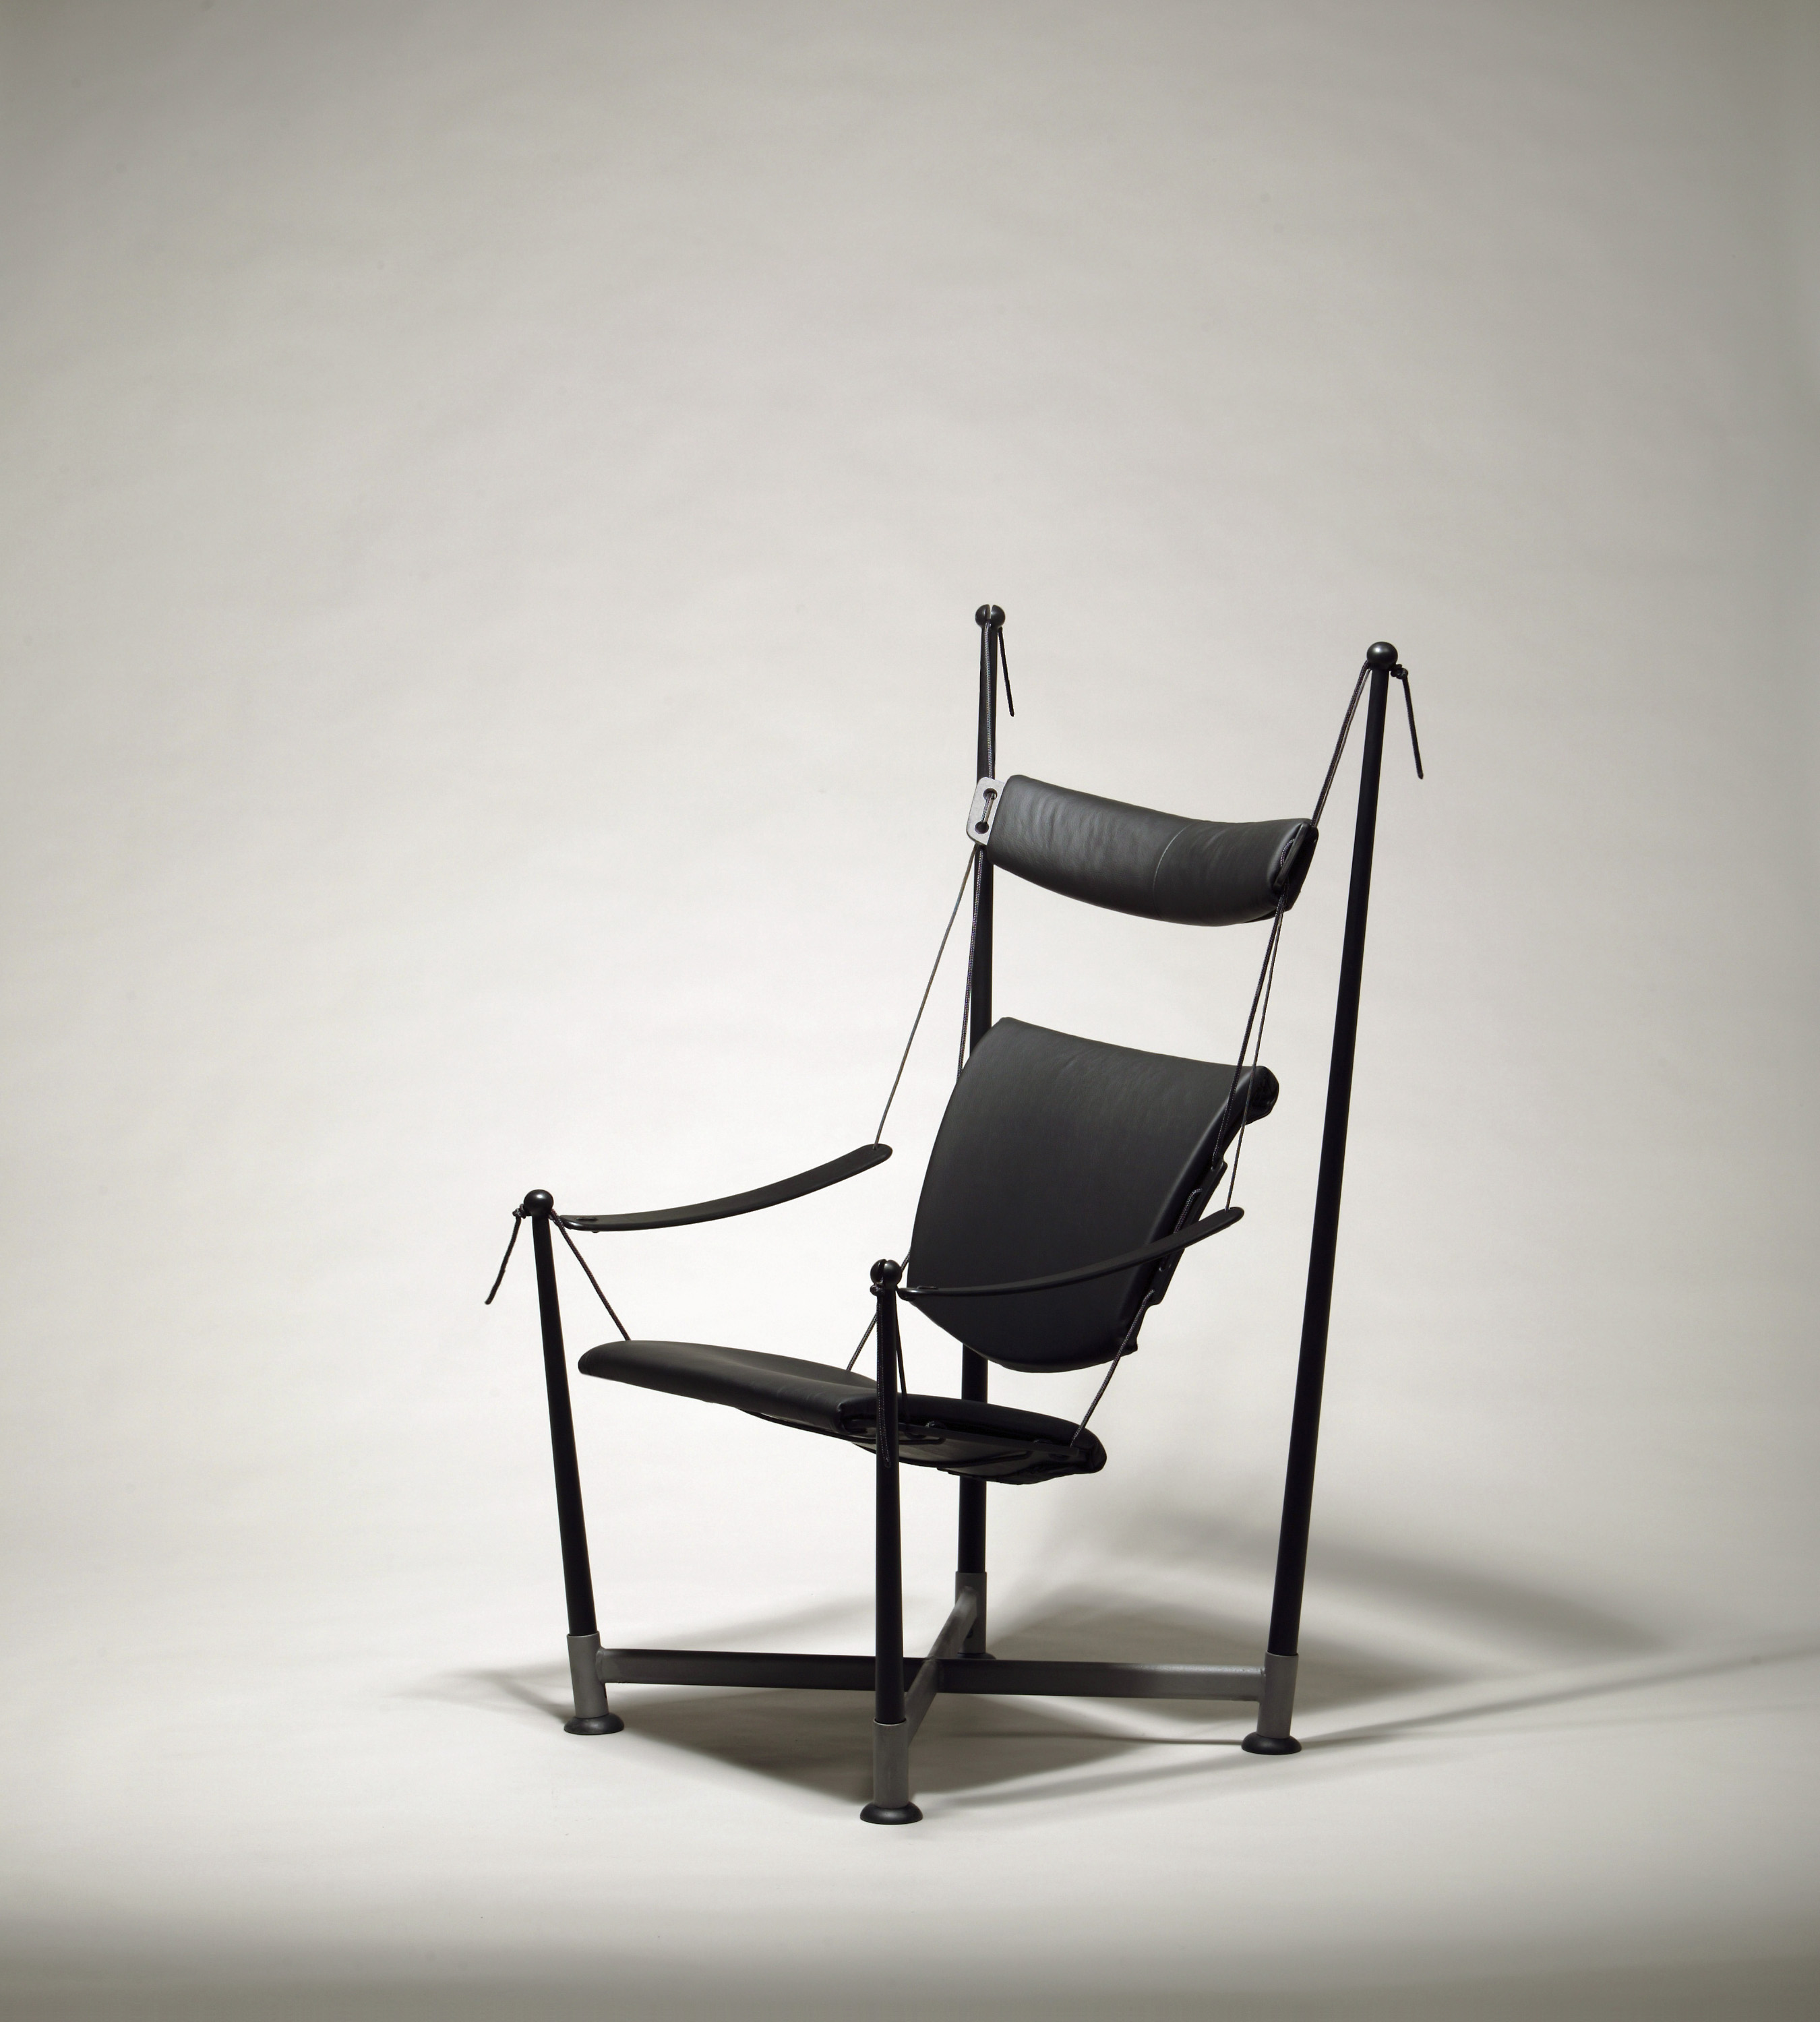 Reflex2 chair